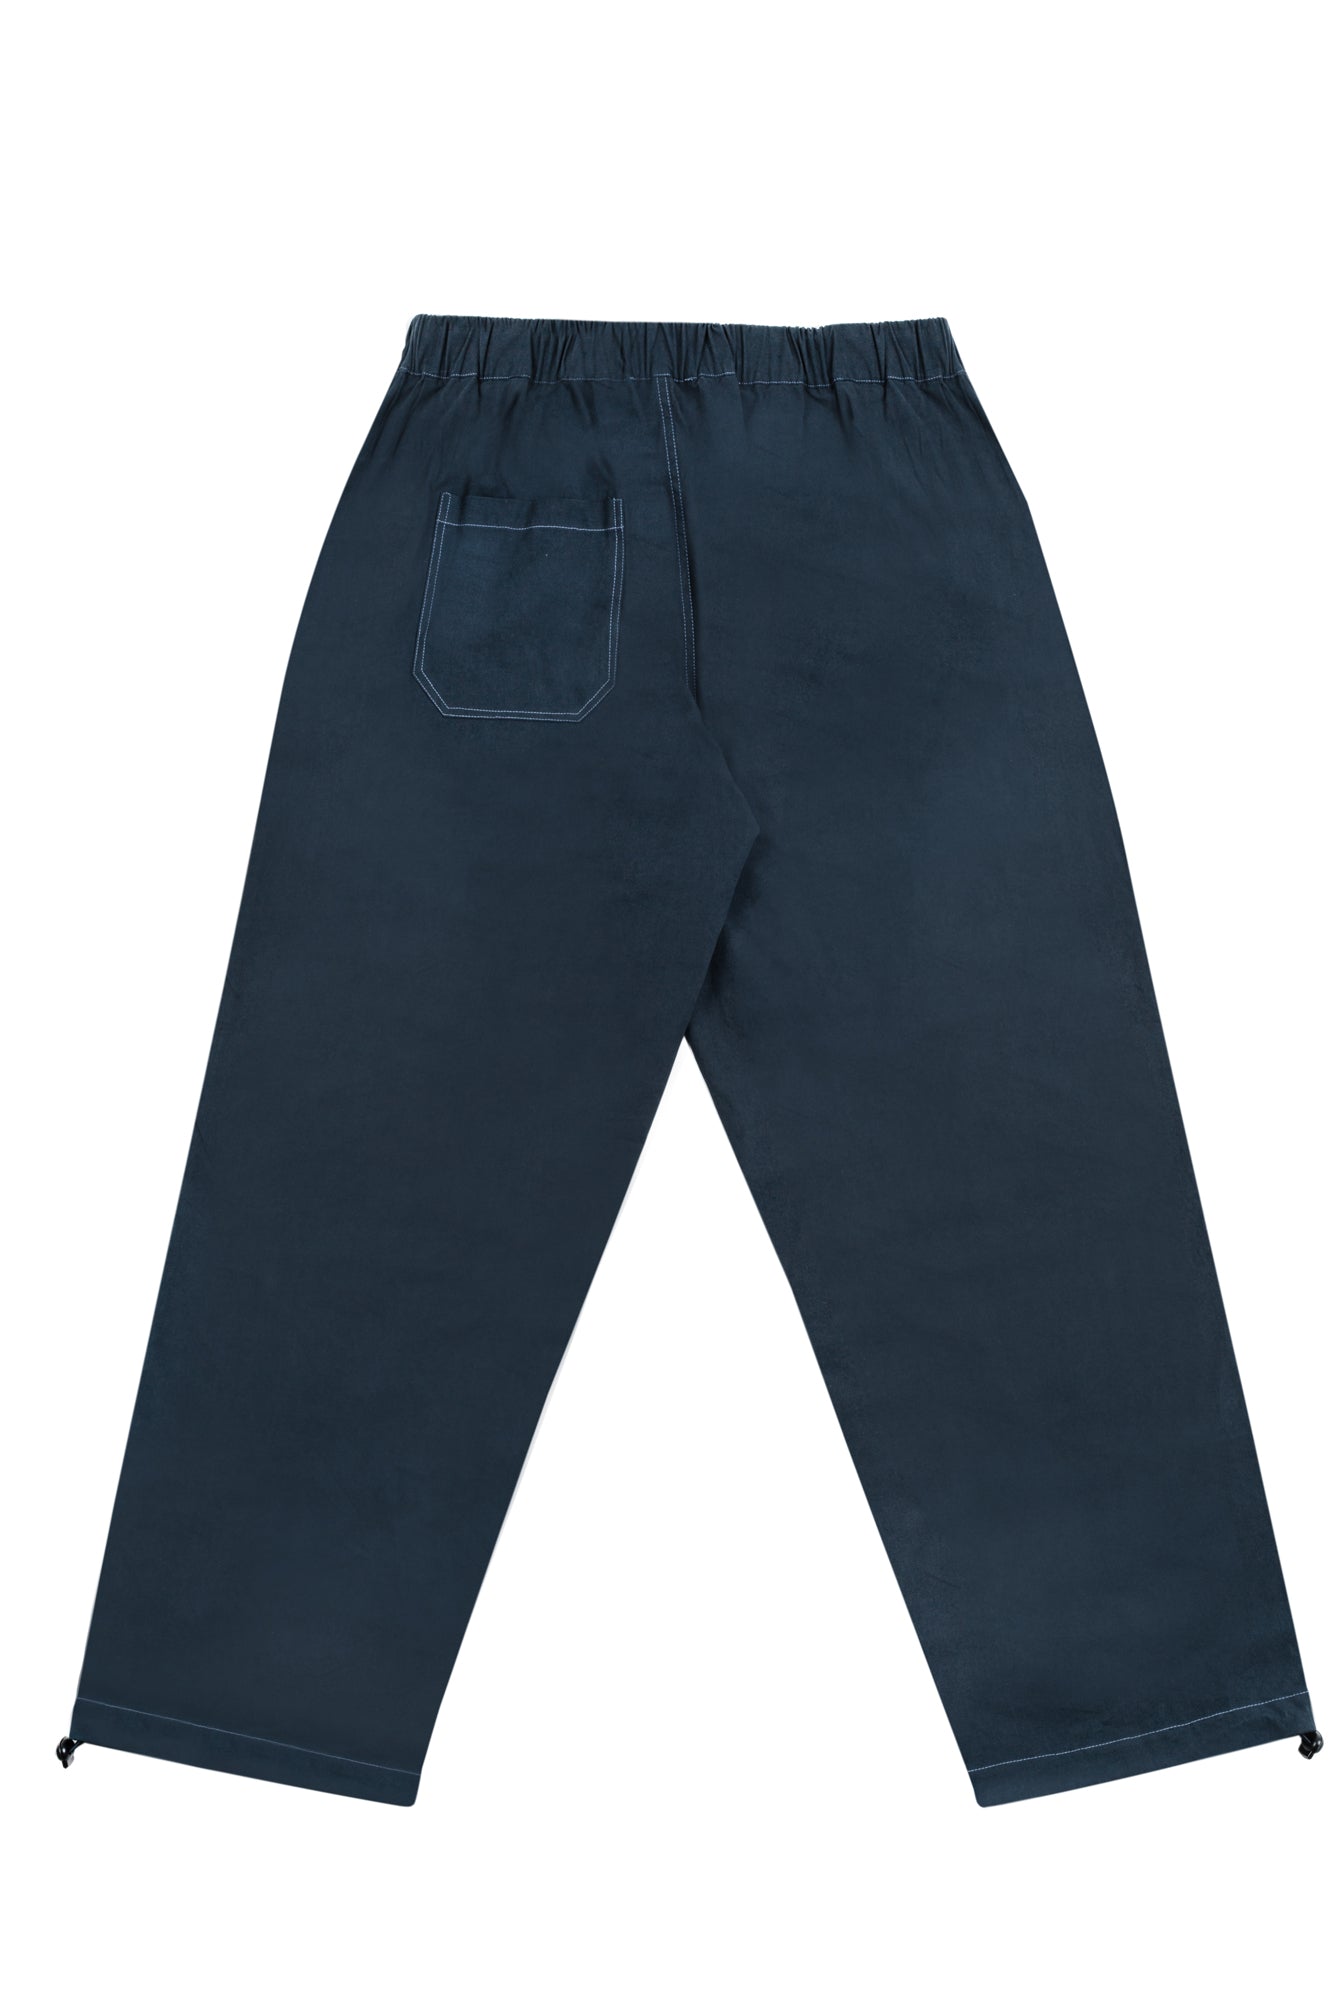 Outdoor Pants (Navy)